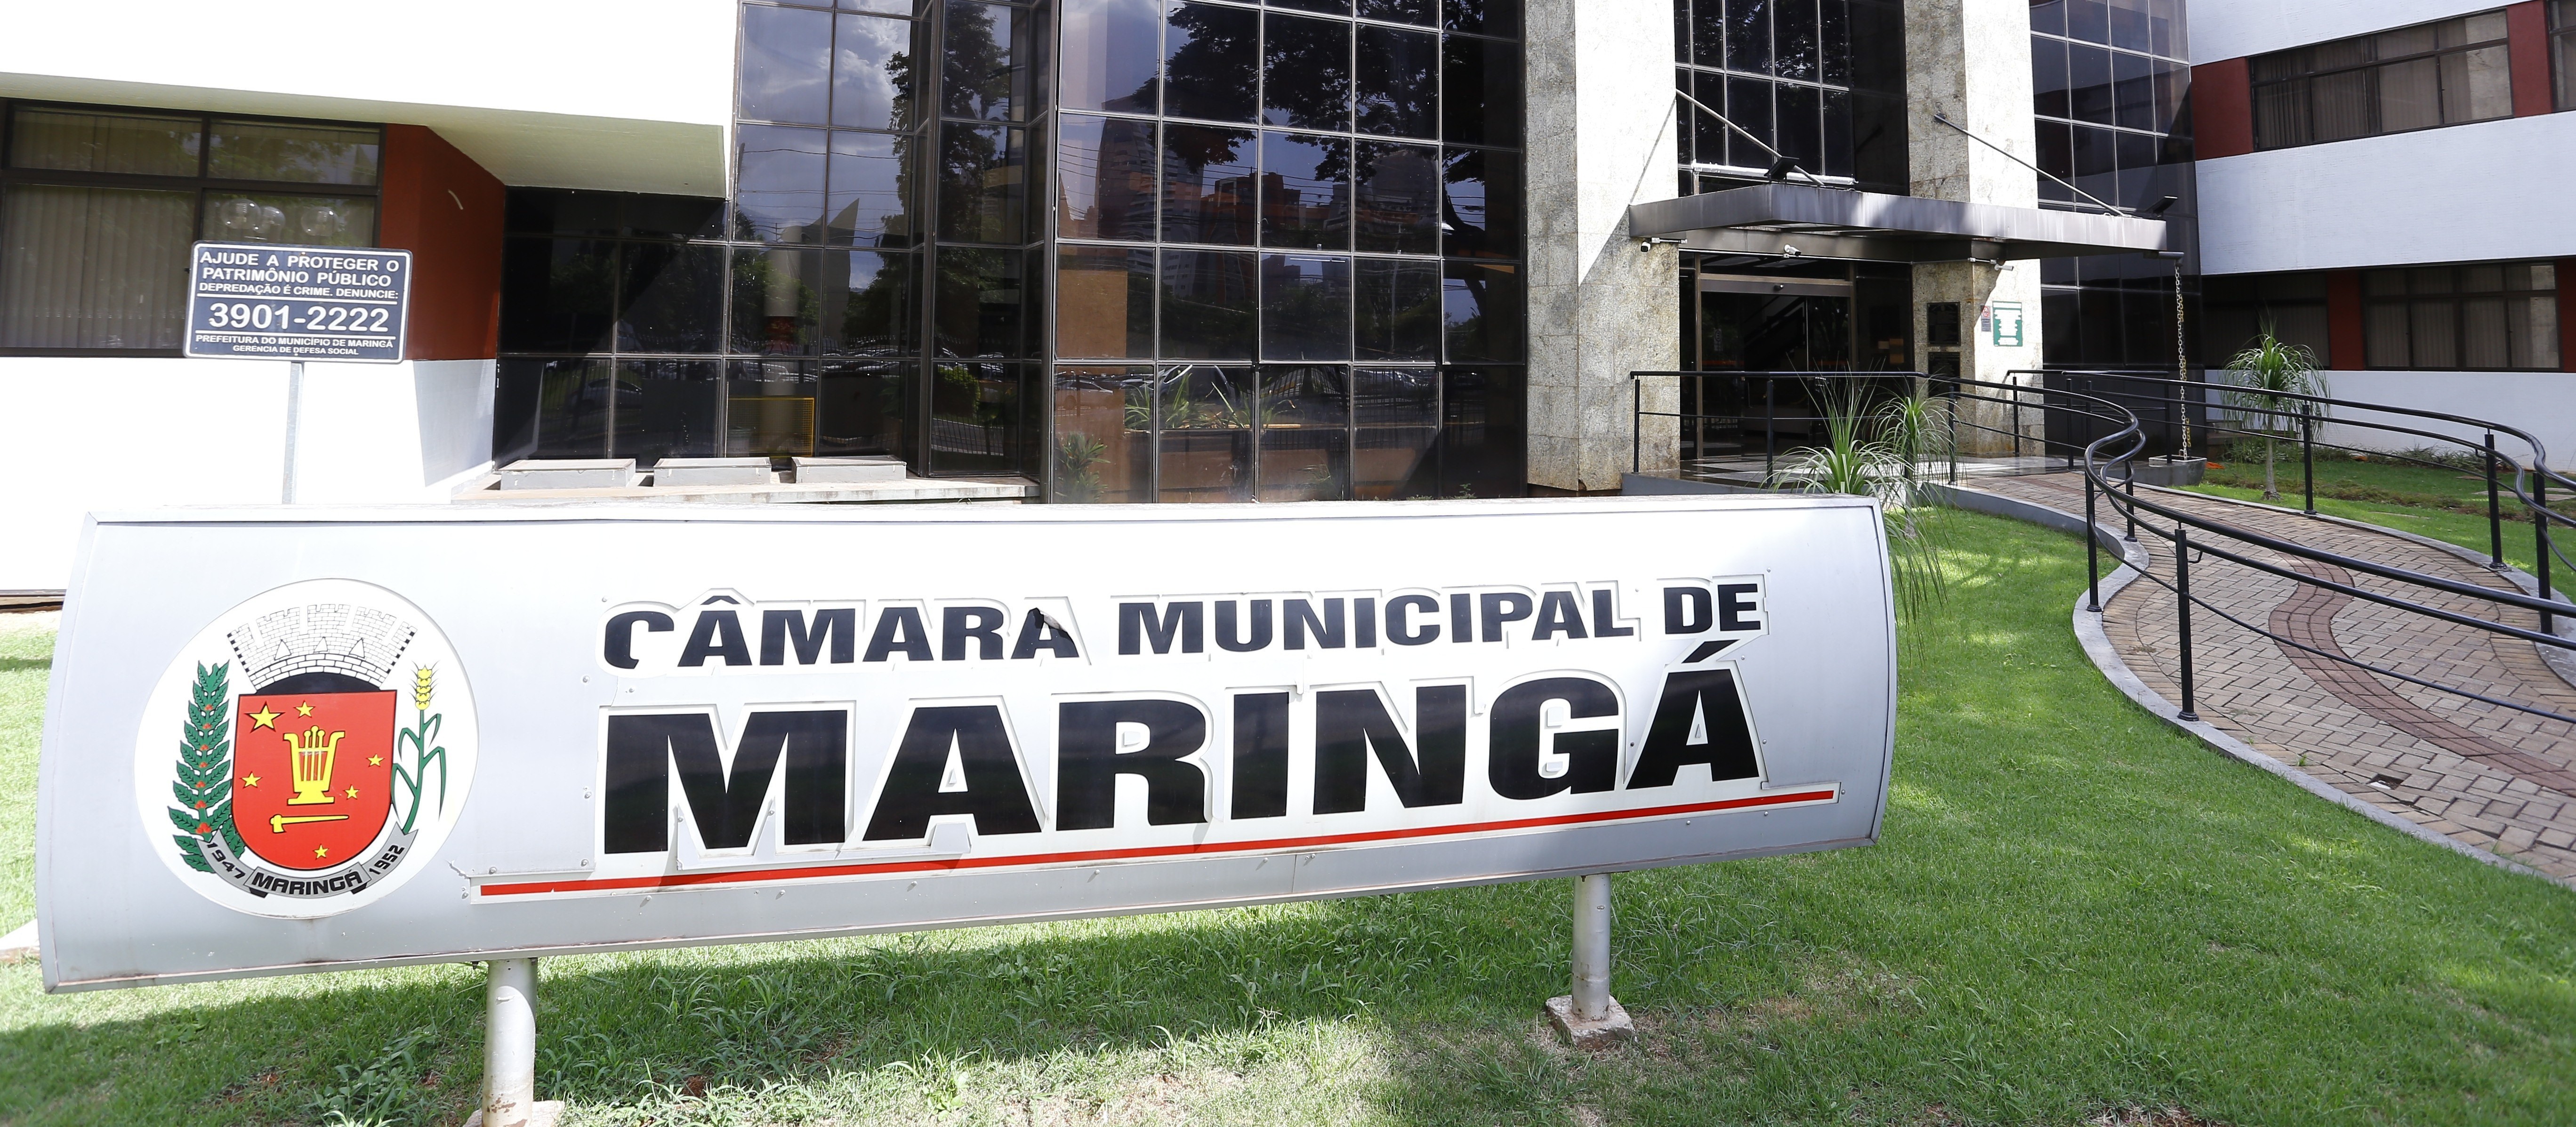 Câmara Municipal de Maringá é considerada a mais eficiente do sul do país